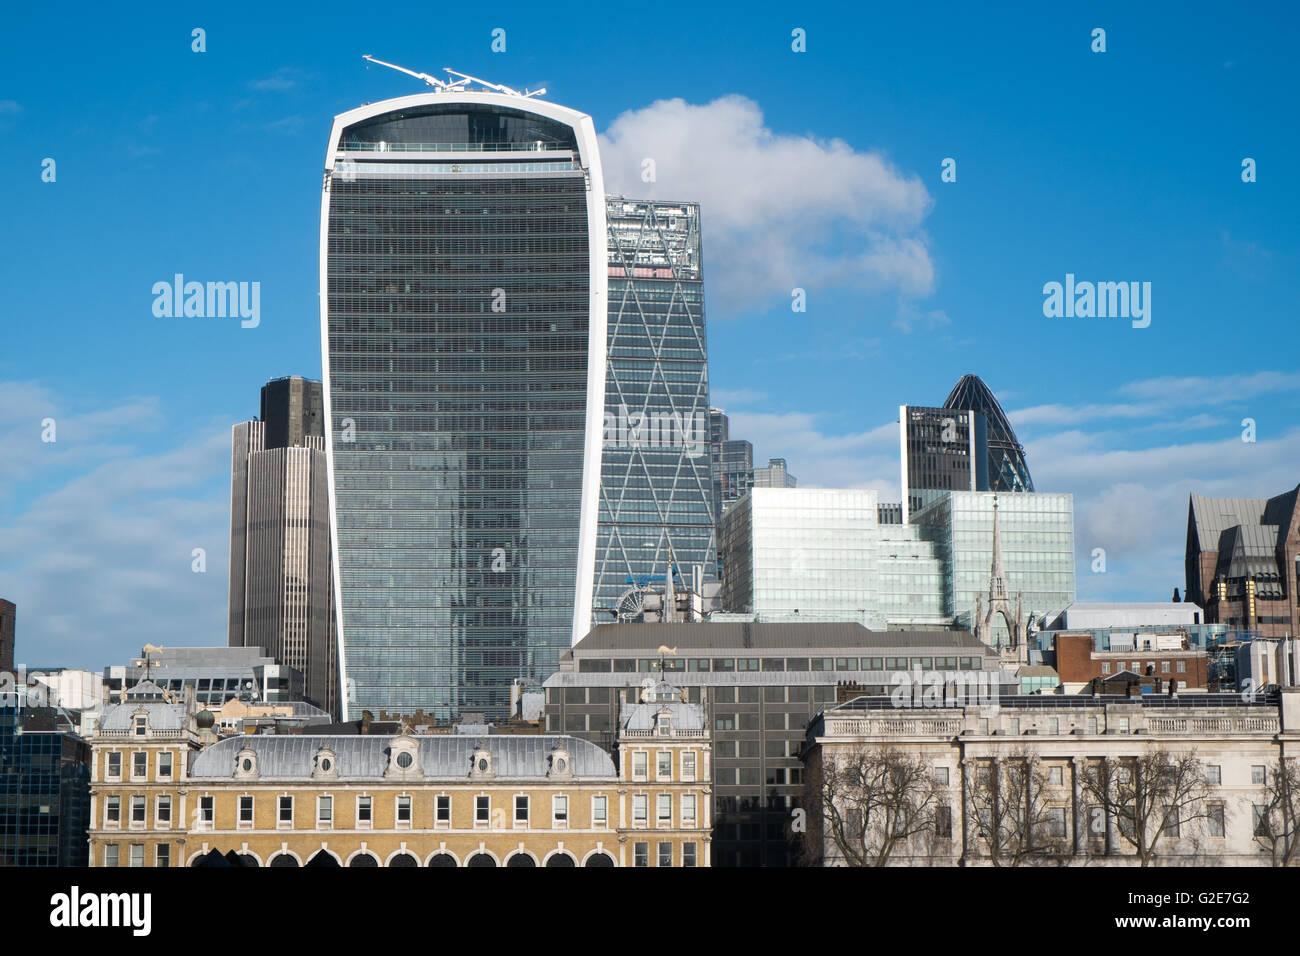 Vue de la ville de Londres y compris cheesegrater, talkie walkie gherkin et bâtiments de London South Bank, Angleterre, Royaume-Uni Banque D'Images